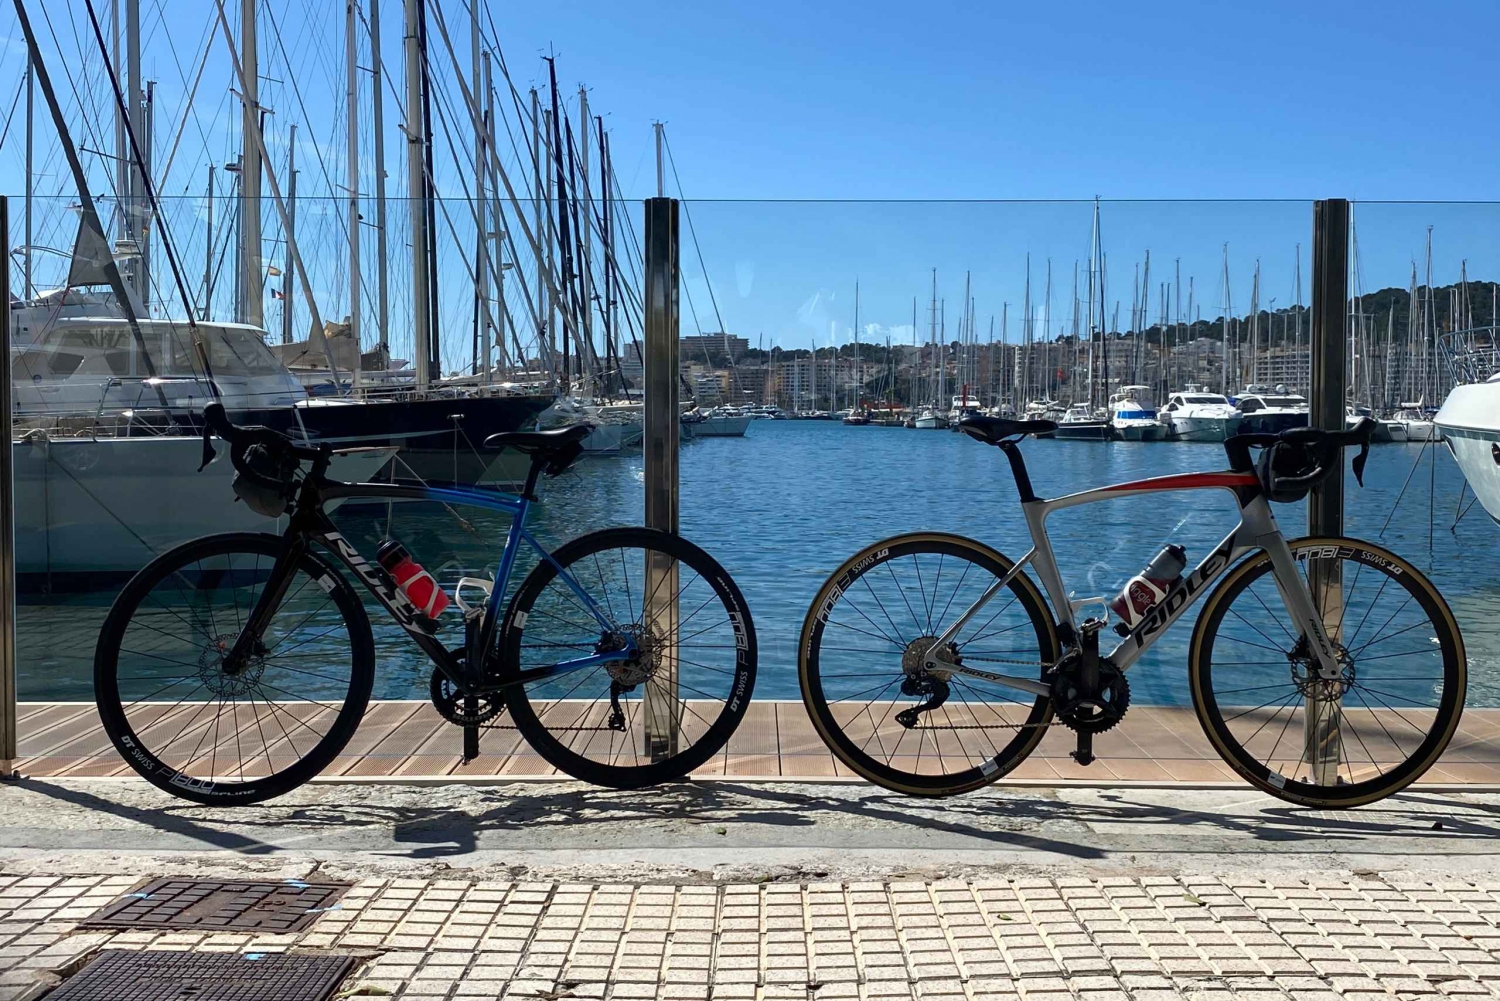 Puerto de Pollenca: Bike rental